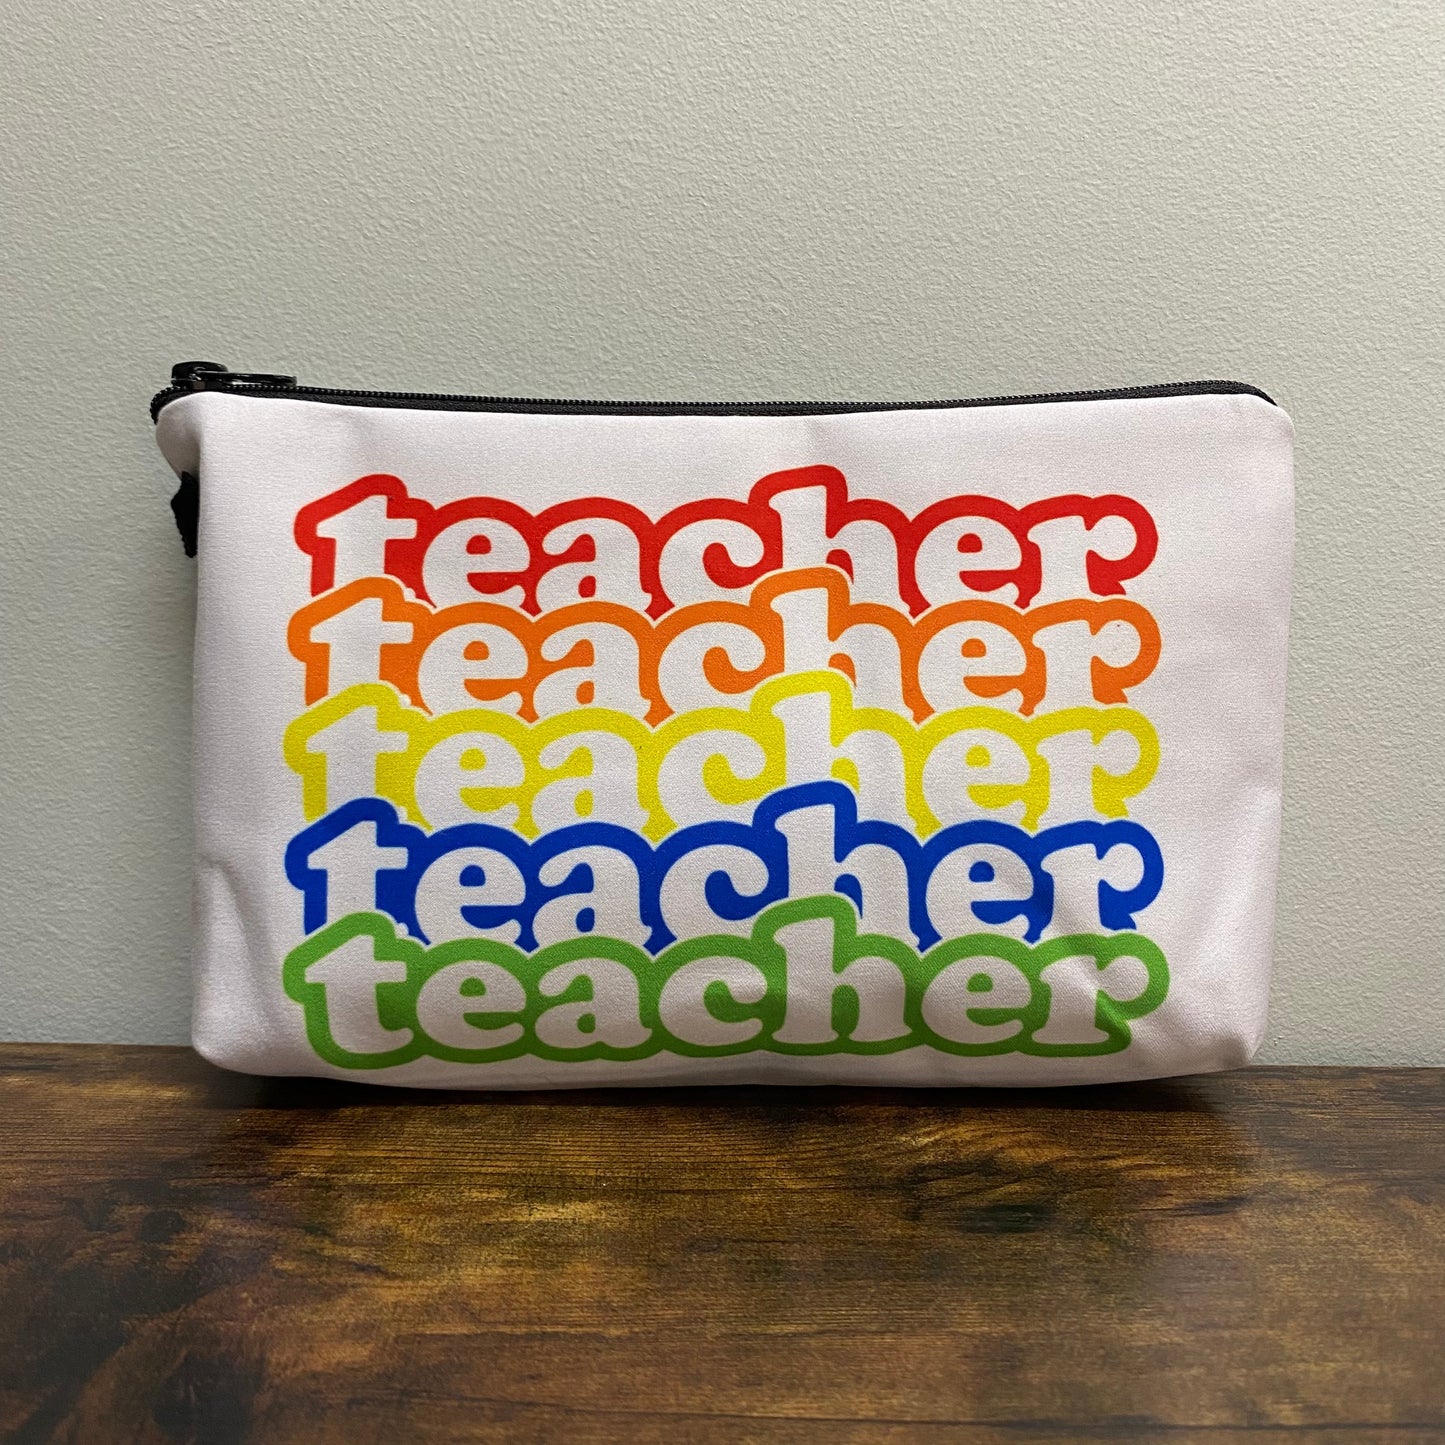 Pouch - Teacher Teacher Teacher